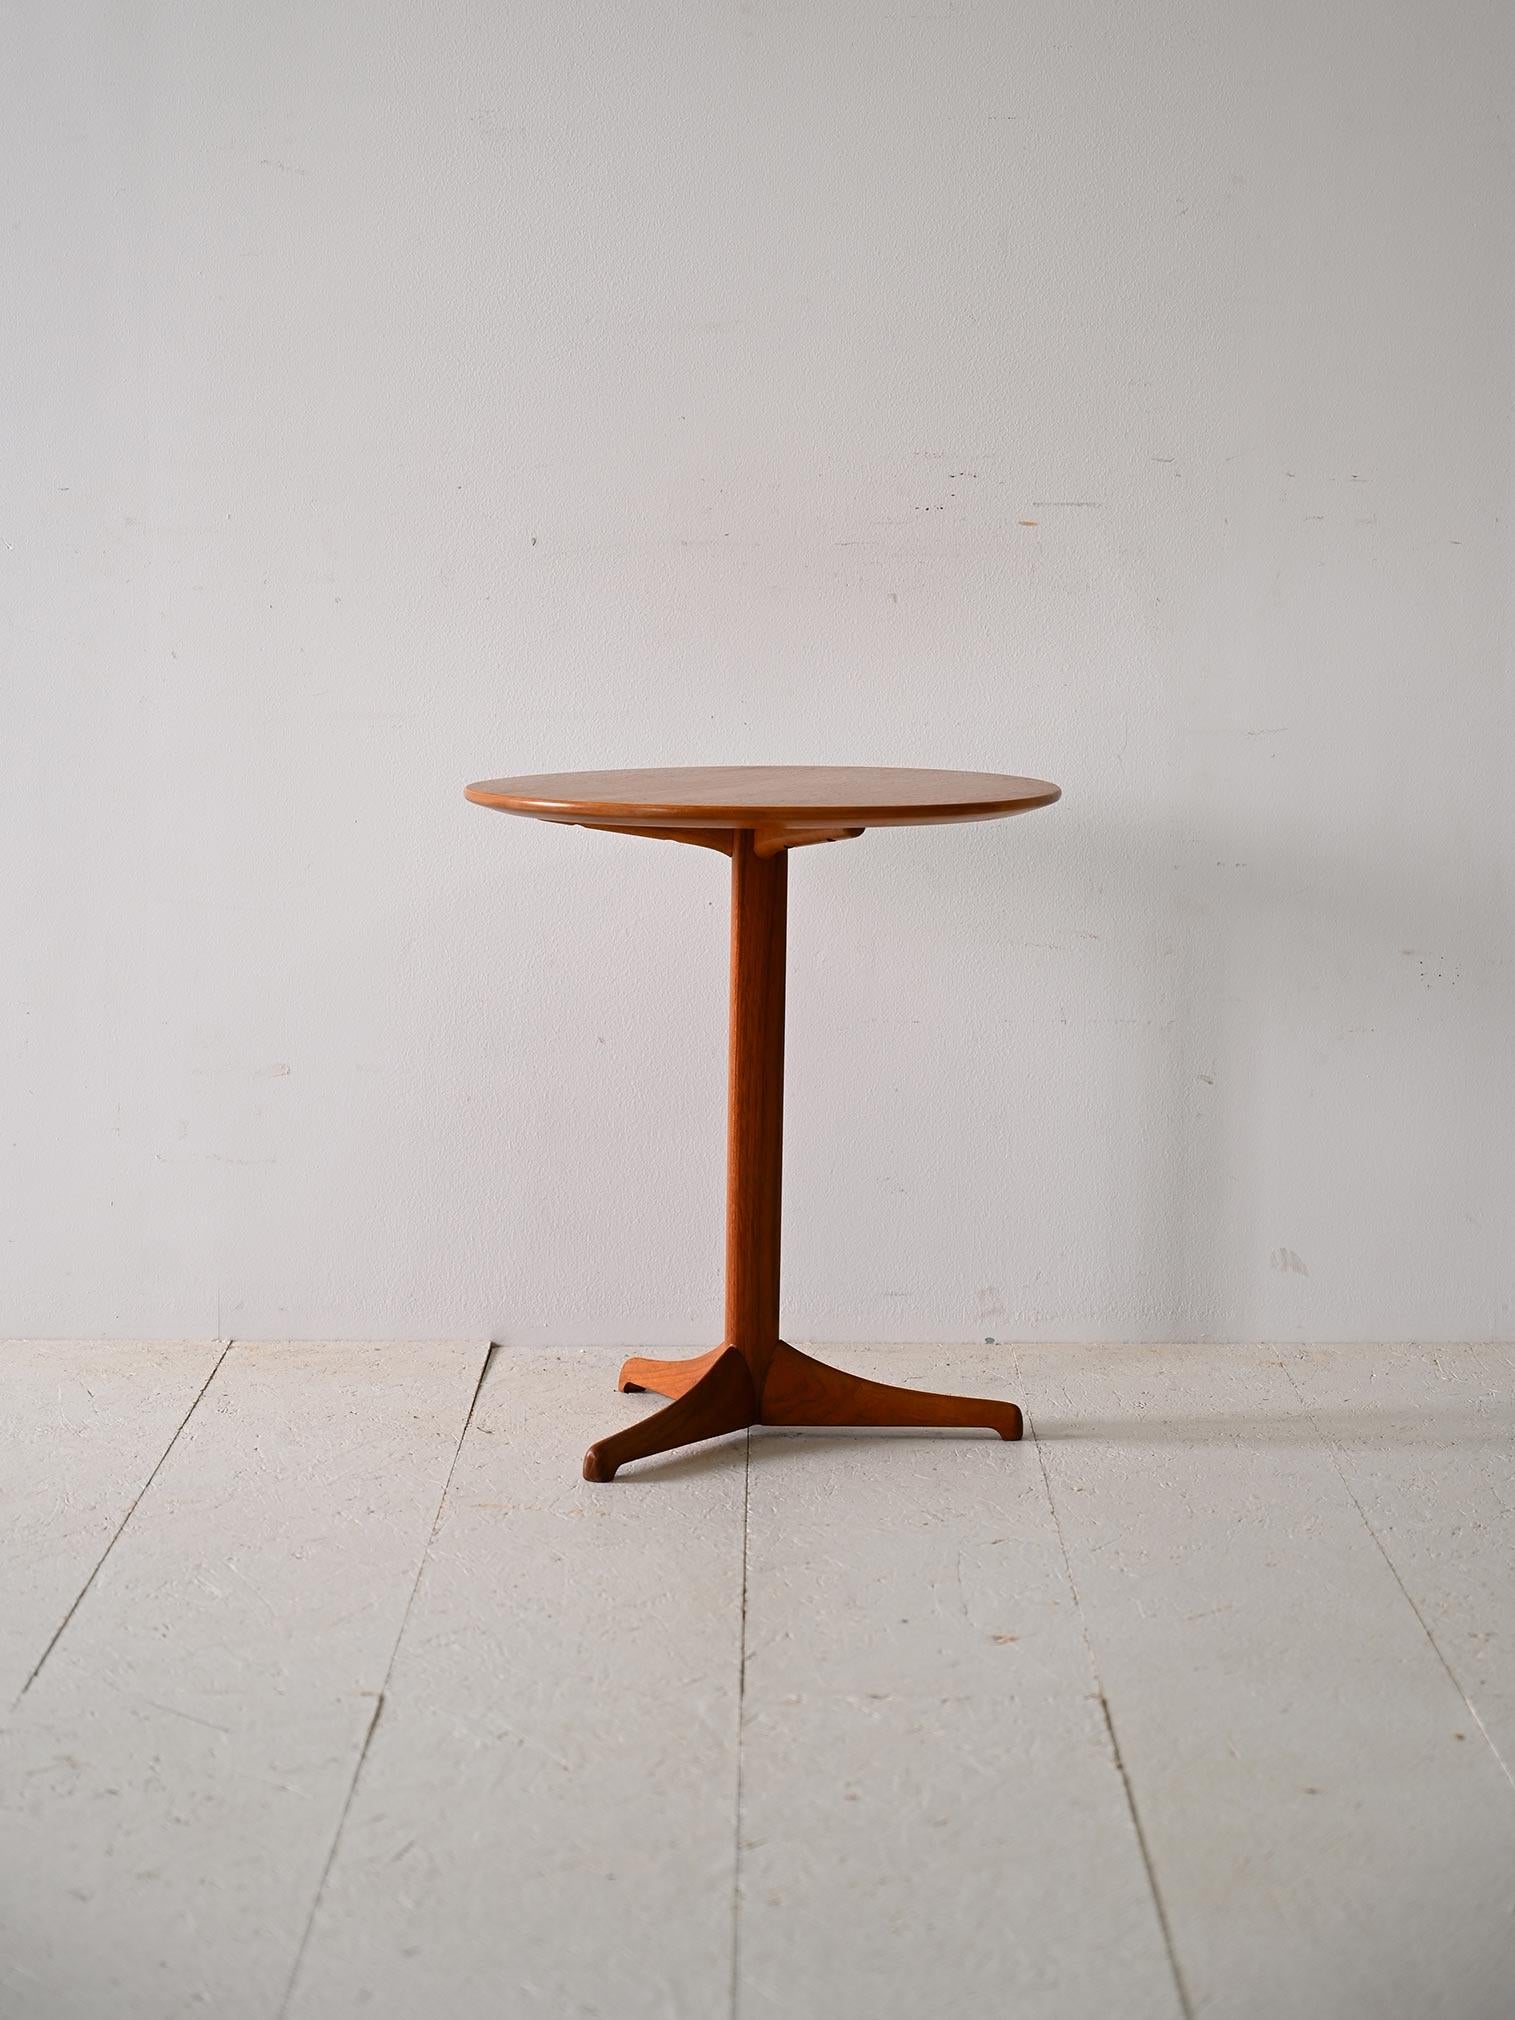 Runder Tisch aus skandinavischem Teakholz aus den 1950er Jahren.

Dieser Teakholztisch ist ein schönes Beispiel für skandinavisches Design mit seinen minimalen, klaren Linien, die typisch für die 1960er Jahre sind.

Entworfen von Kerstin